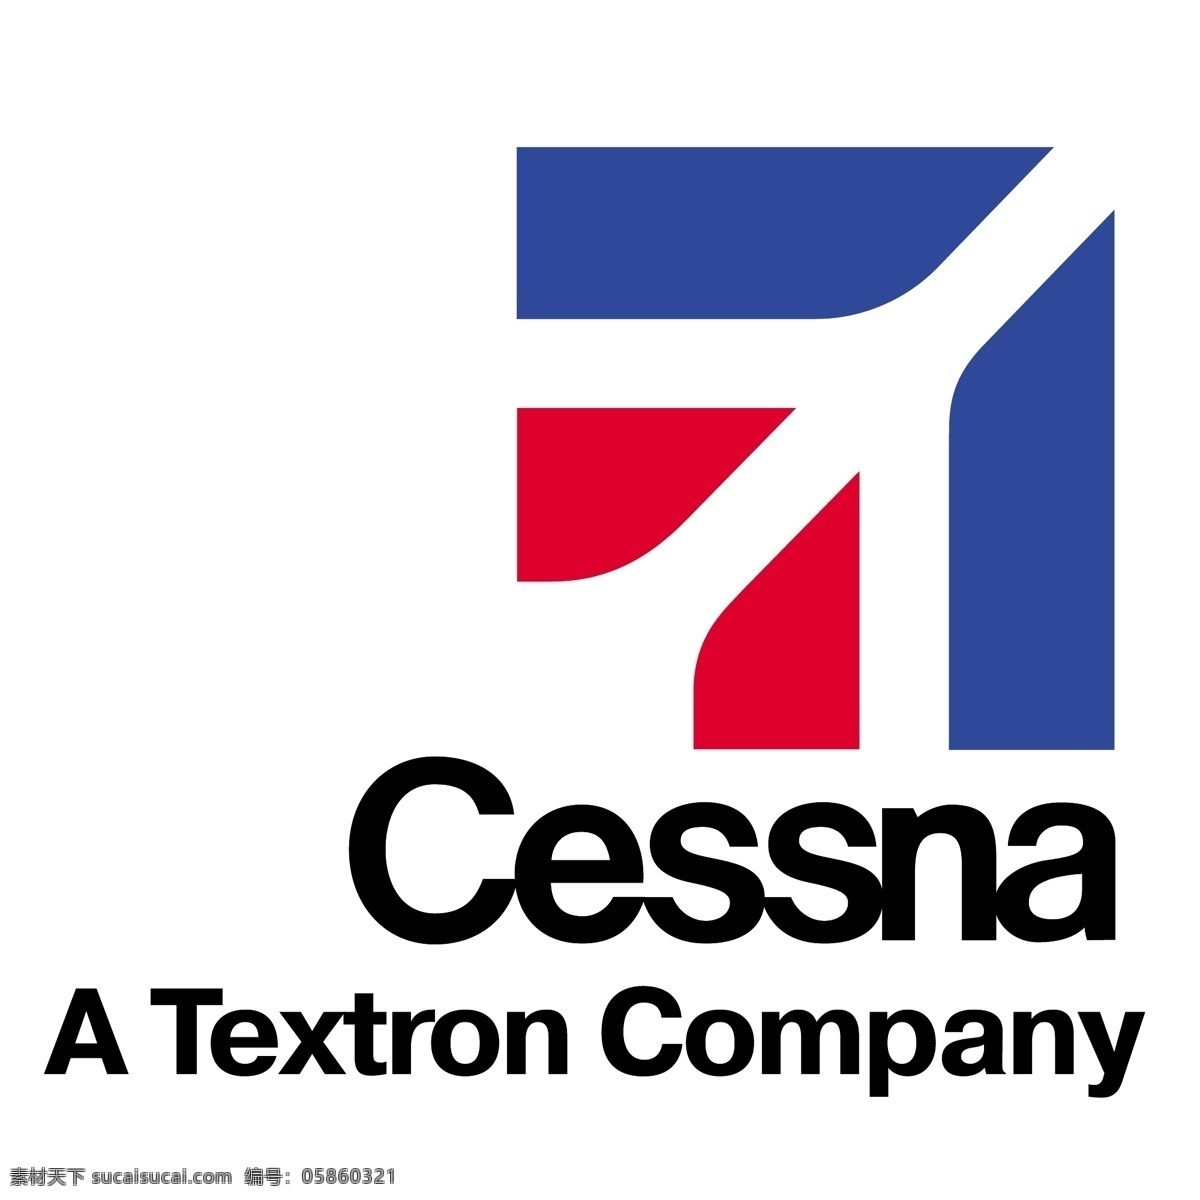 塞斯 纳 cessna 矢量 logo 塞斯纳 矢量logo 世界 航空公司 标志 企业 标识标志图标